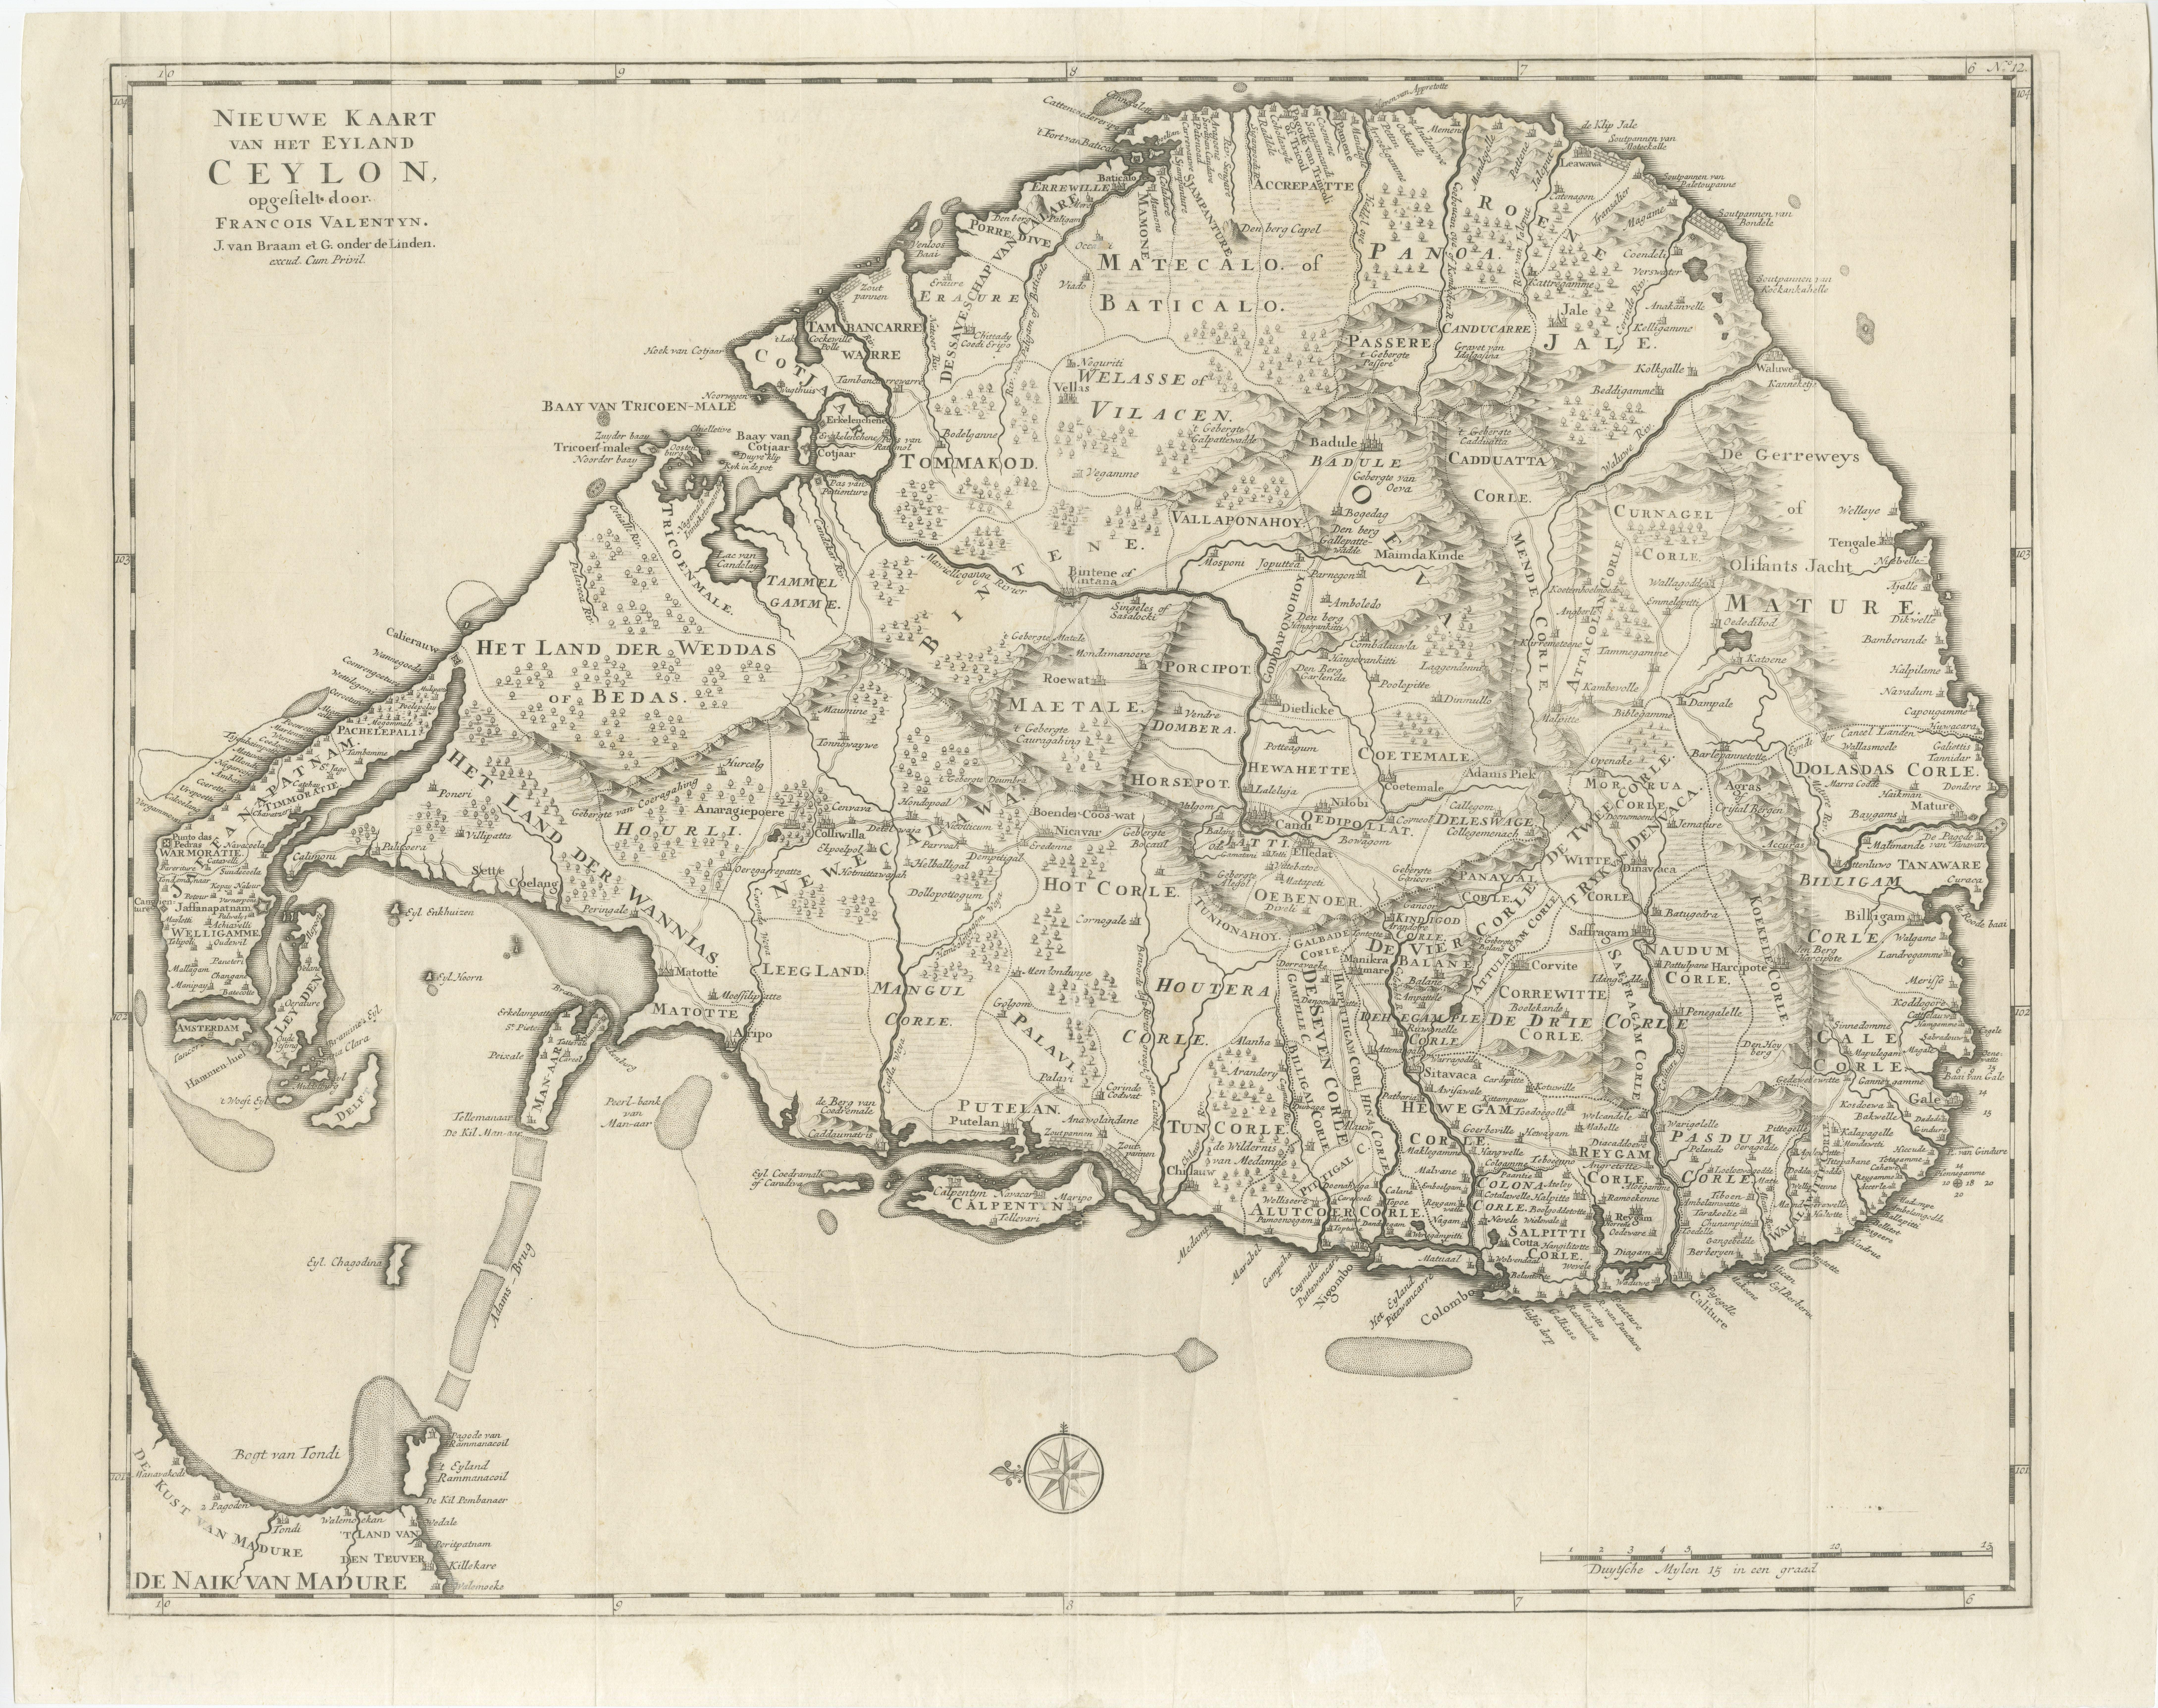 Antique map titled 'Nieuwe Kaart van het Eyland Ceylon opgestelt door Francois Valentyn'. Beautiful map of Sri Lanka. Originates from 'Oud en Nieuw Oost Indien (..)' by F. Valentijn, 1724.

Francois Valentijn (1666-1727) was a minister, naturalist